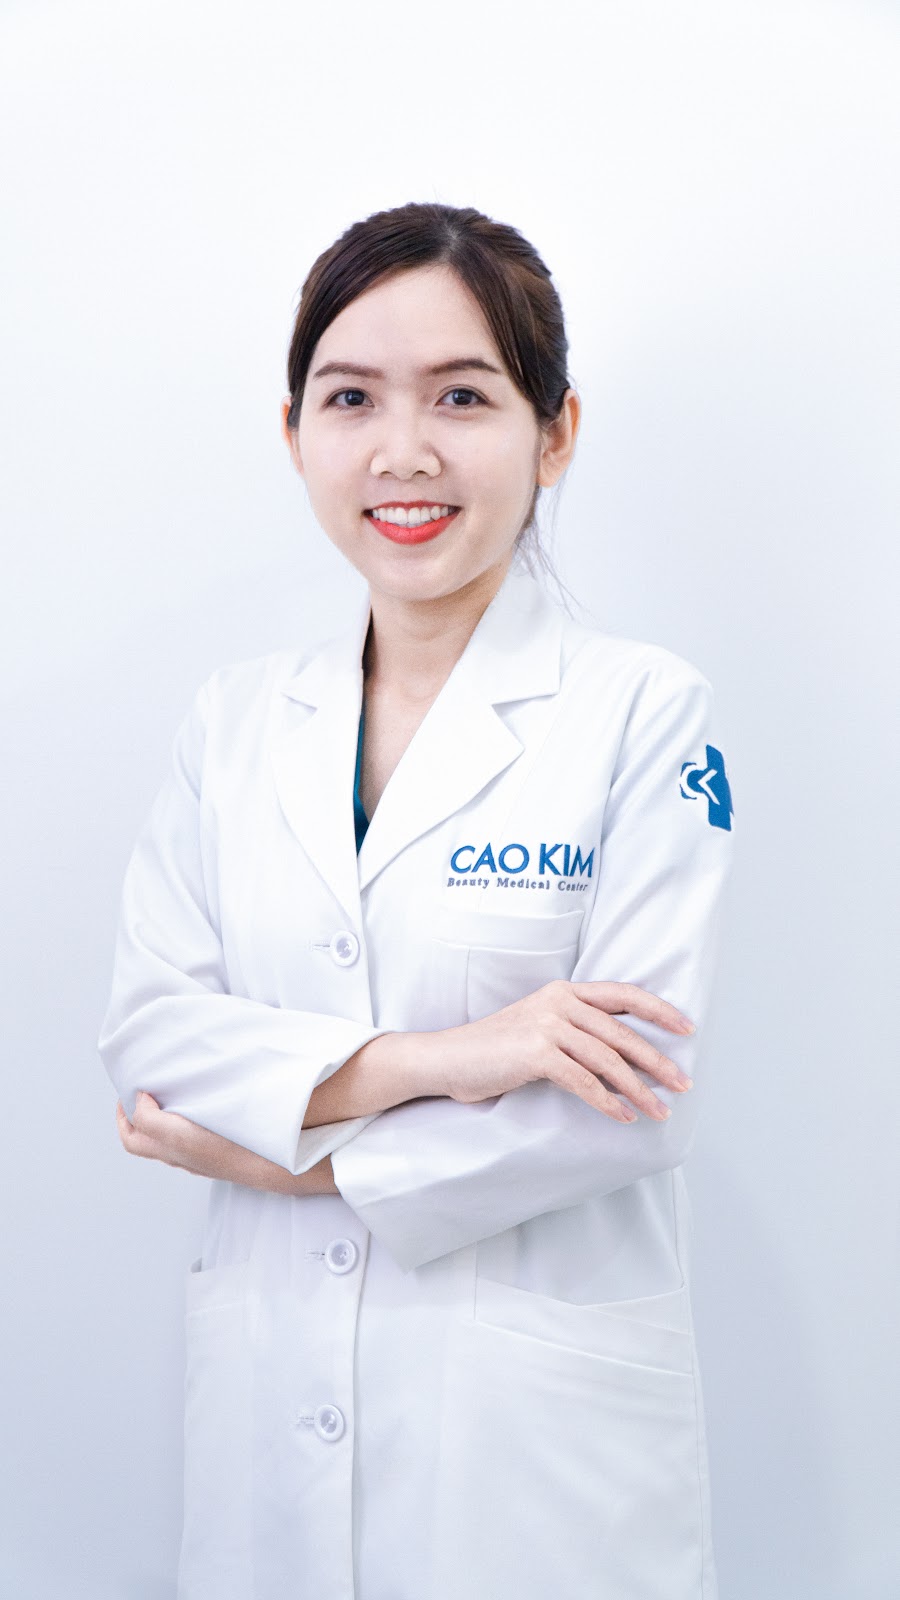 Bác sĩ Huỳnh Linh Nói về Glubel - phương pháp làm trắng thành công cho hàng nghìn phụ nữ Việt - 1